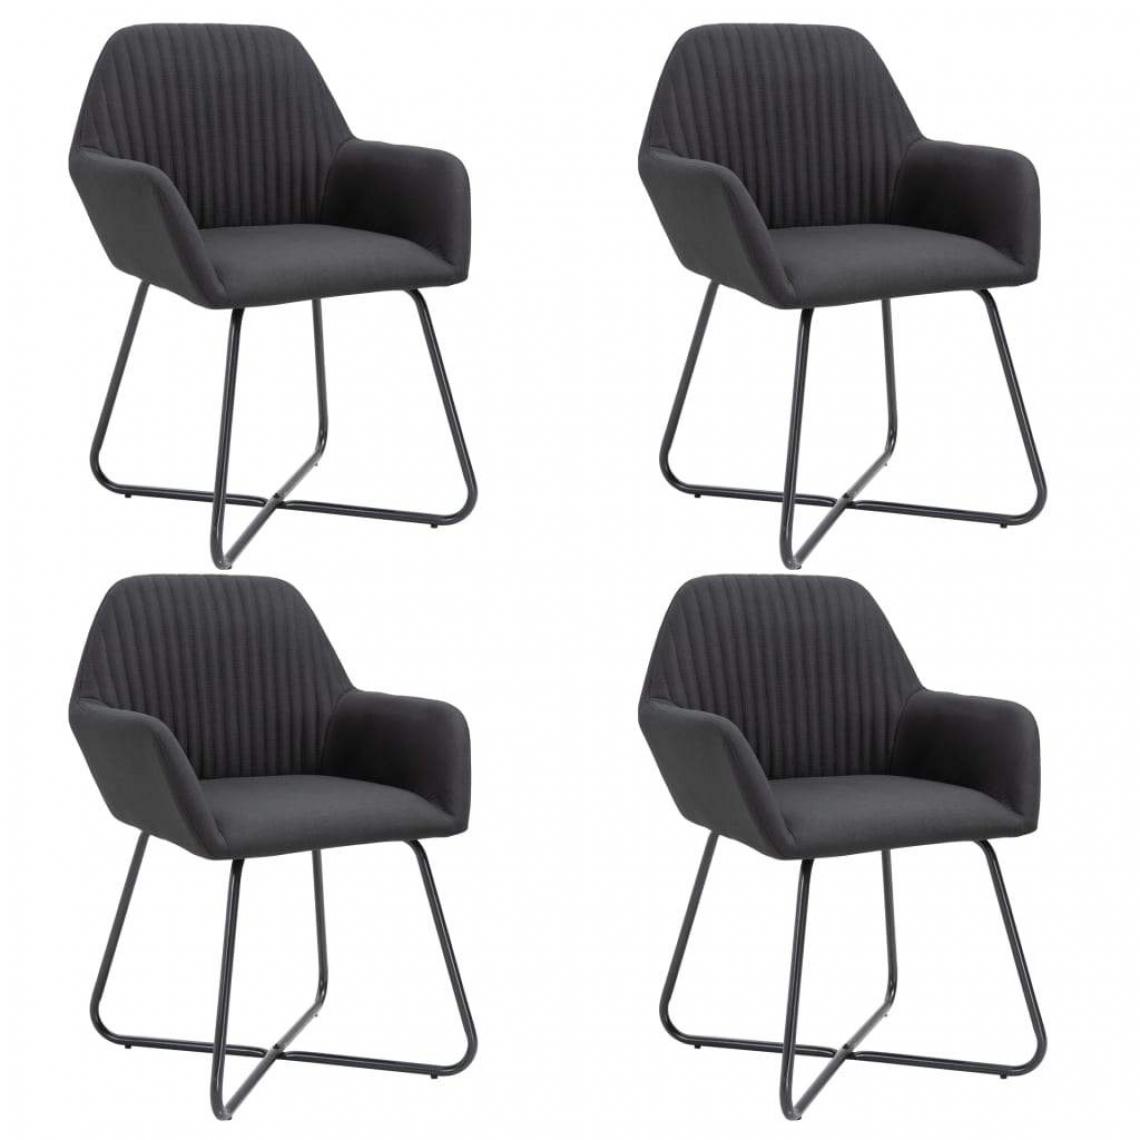 Decoshop26 - Lot de 4 chaises de salle à manger cuisine design moderne tissu noir CDS021841 - Chaises